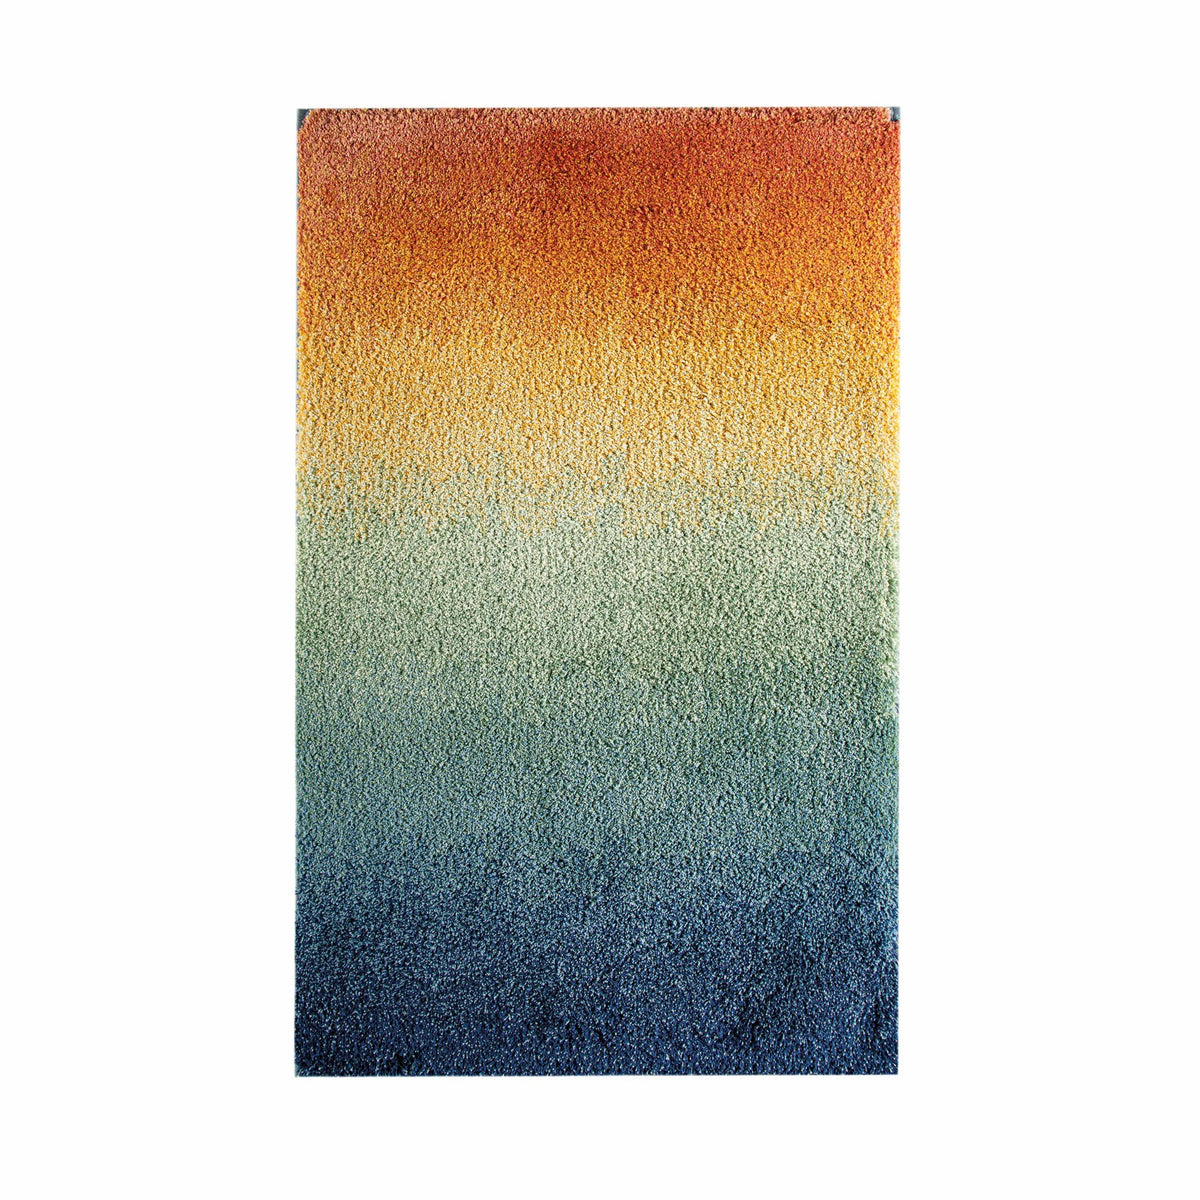 Silo Image of Graccioza Sunrise Bath Rugs in Multicolor 2